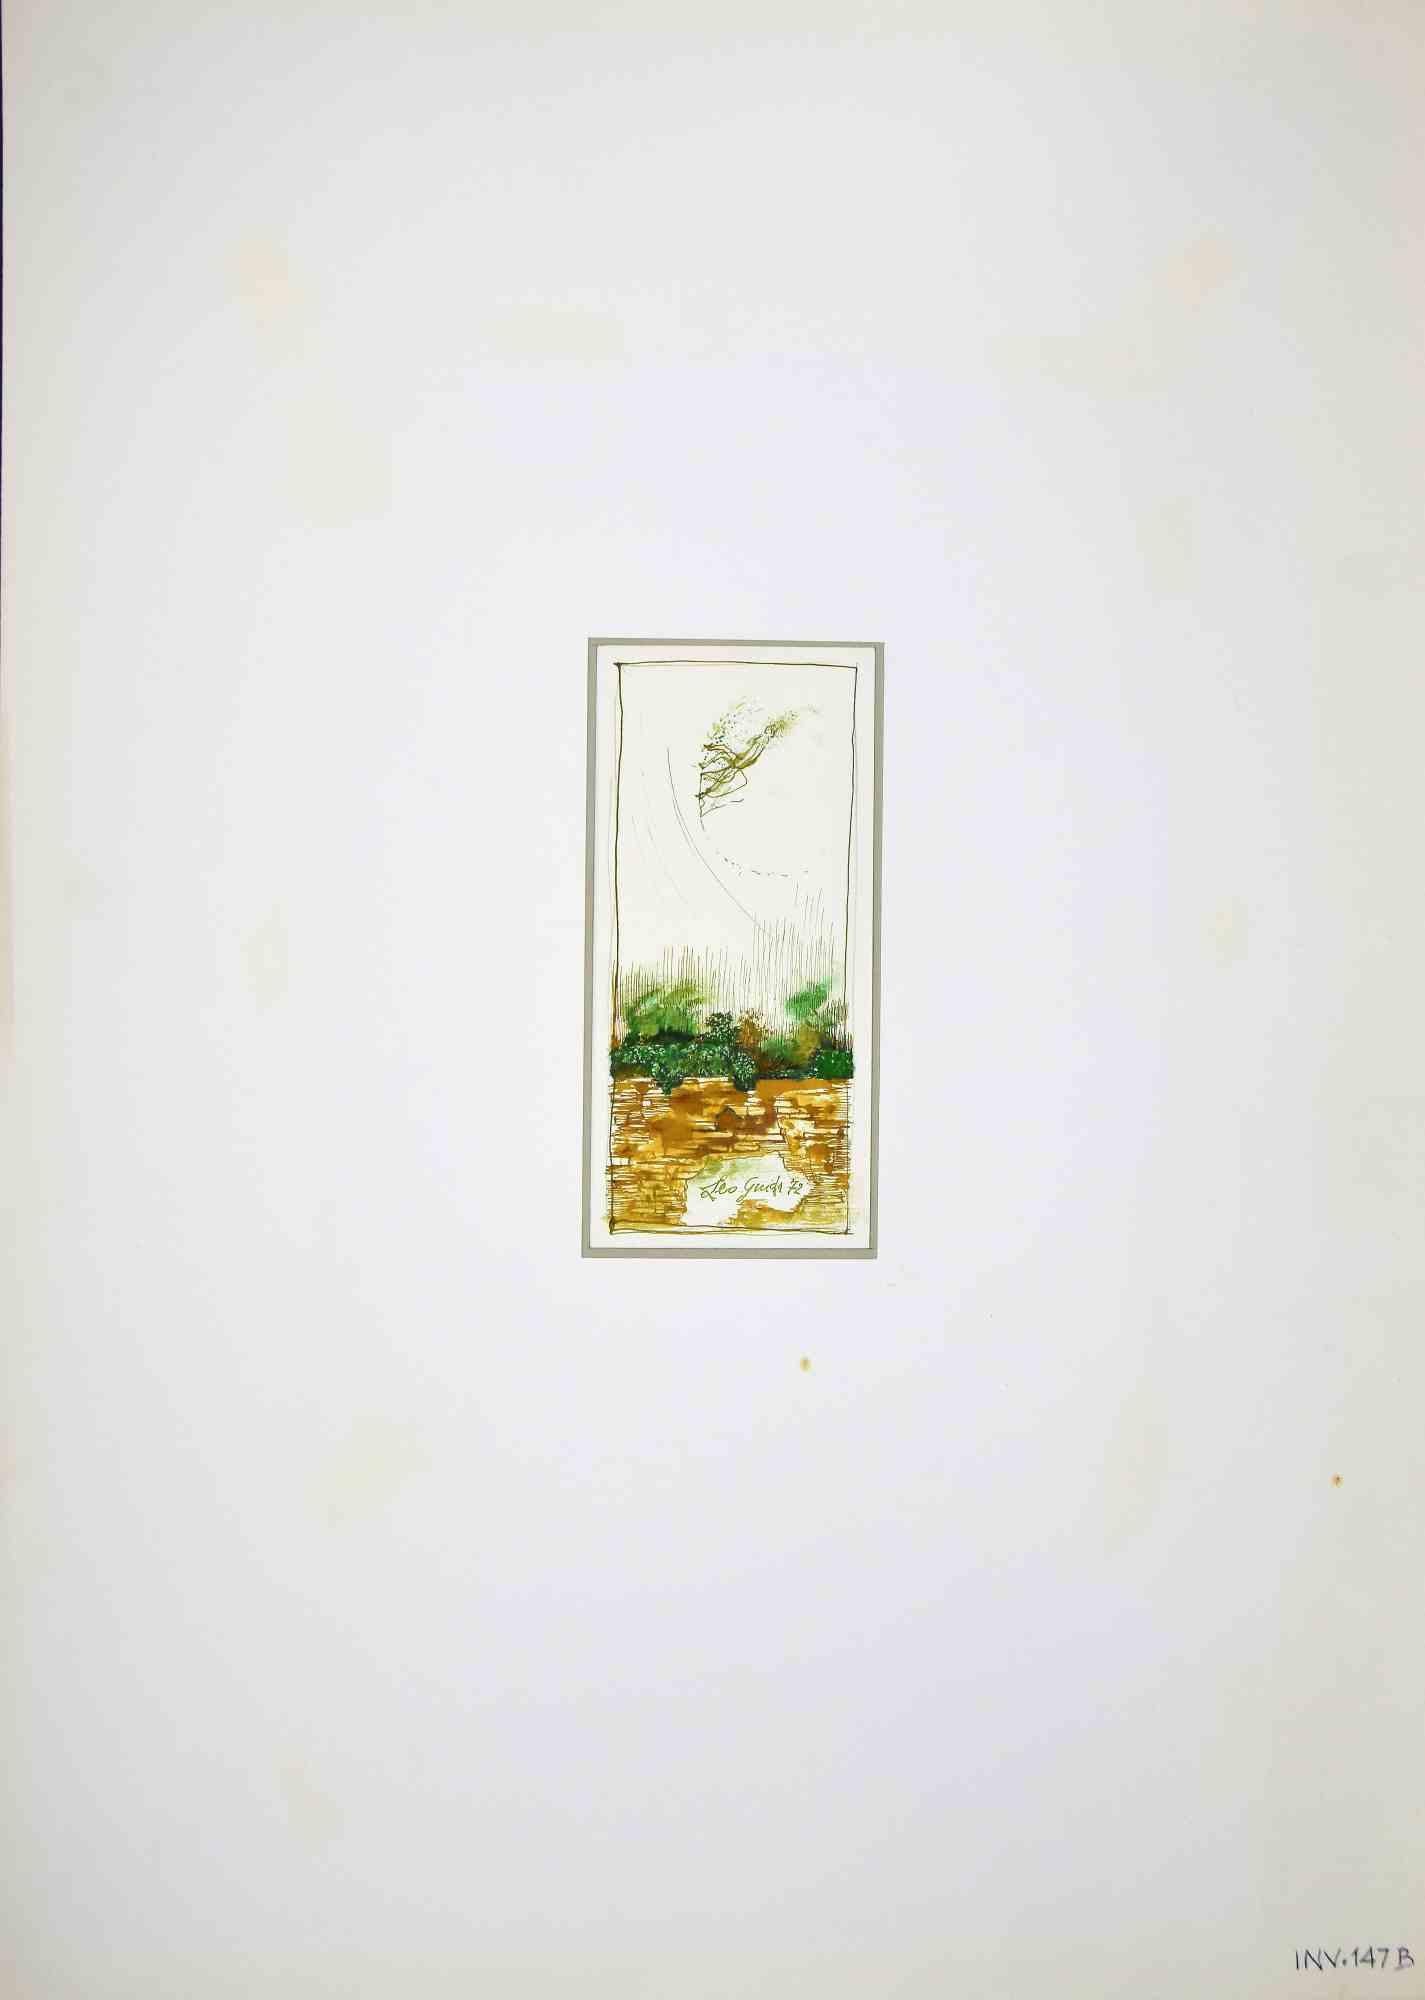 Paysage est un dessin original à l'encre et à l'aquarelle réalisé par Leo Guida en 1972.

Bon état.

Signé à la main.

Leo Guida  (1992 - 2017). Sensible aux questions d'actualité, aux mouvements artistiques et aux techniques historiques, Leo Guida